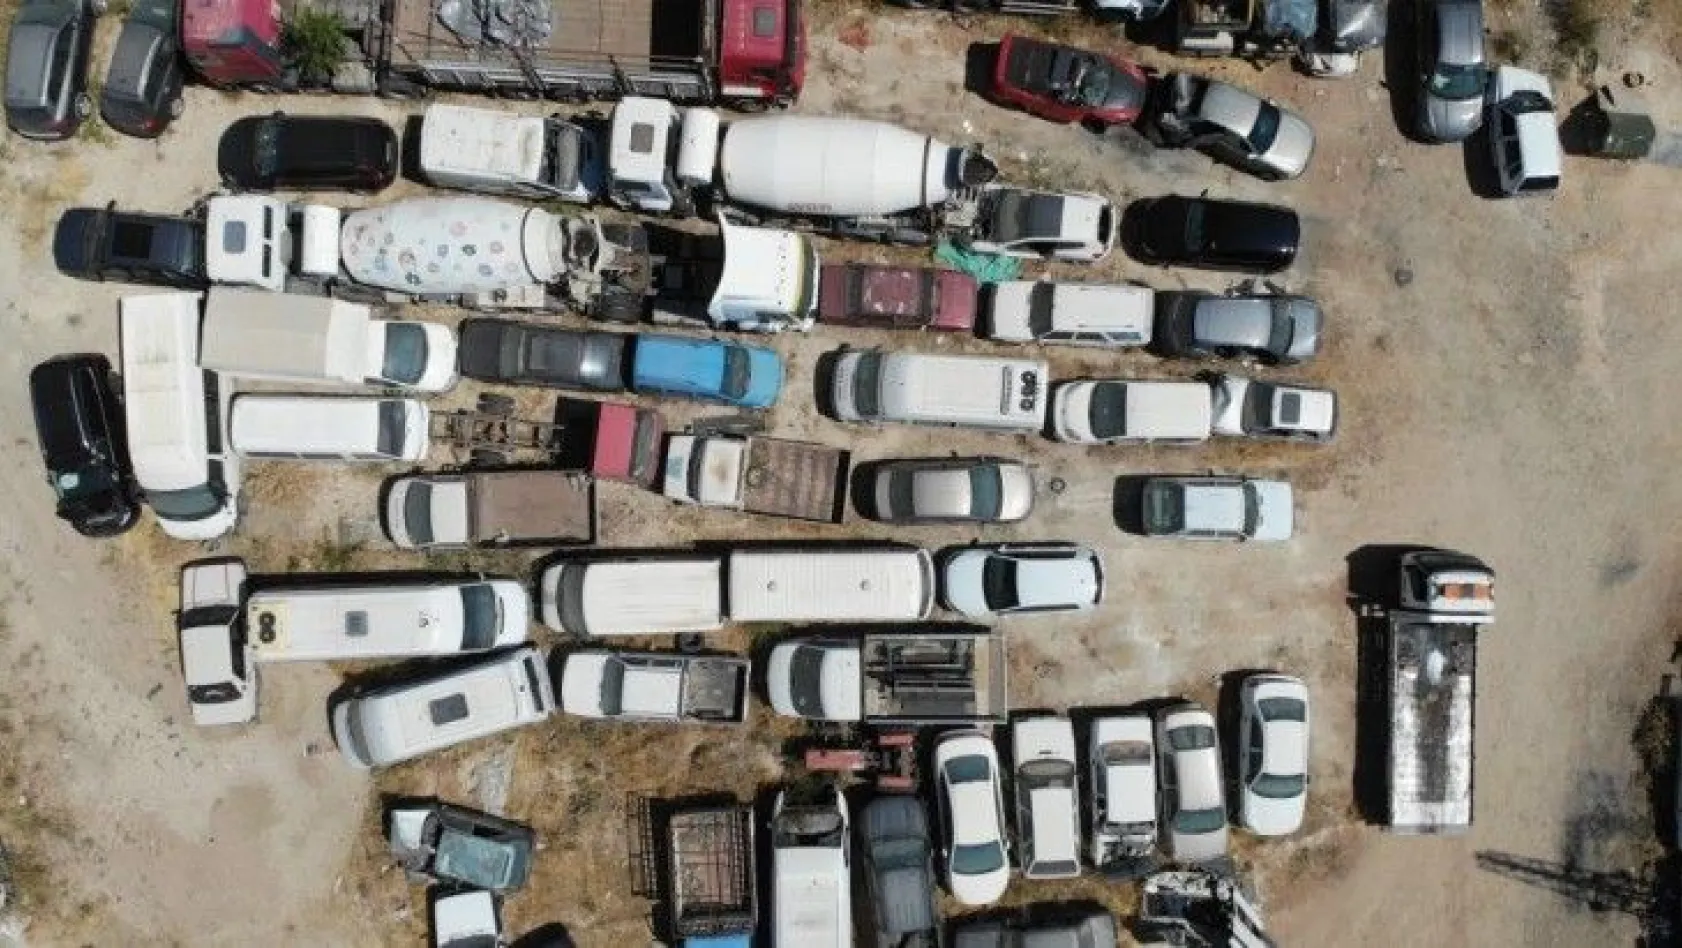 Elazığ'da araç mezarlığı, 60 milyonluk servet çürüyor